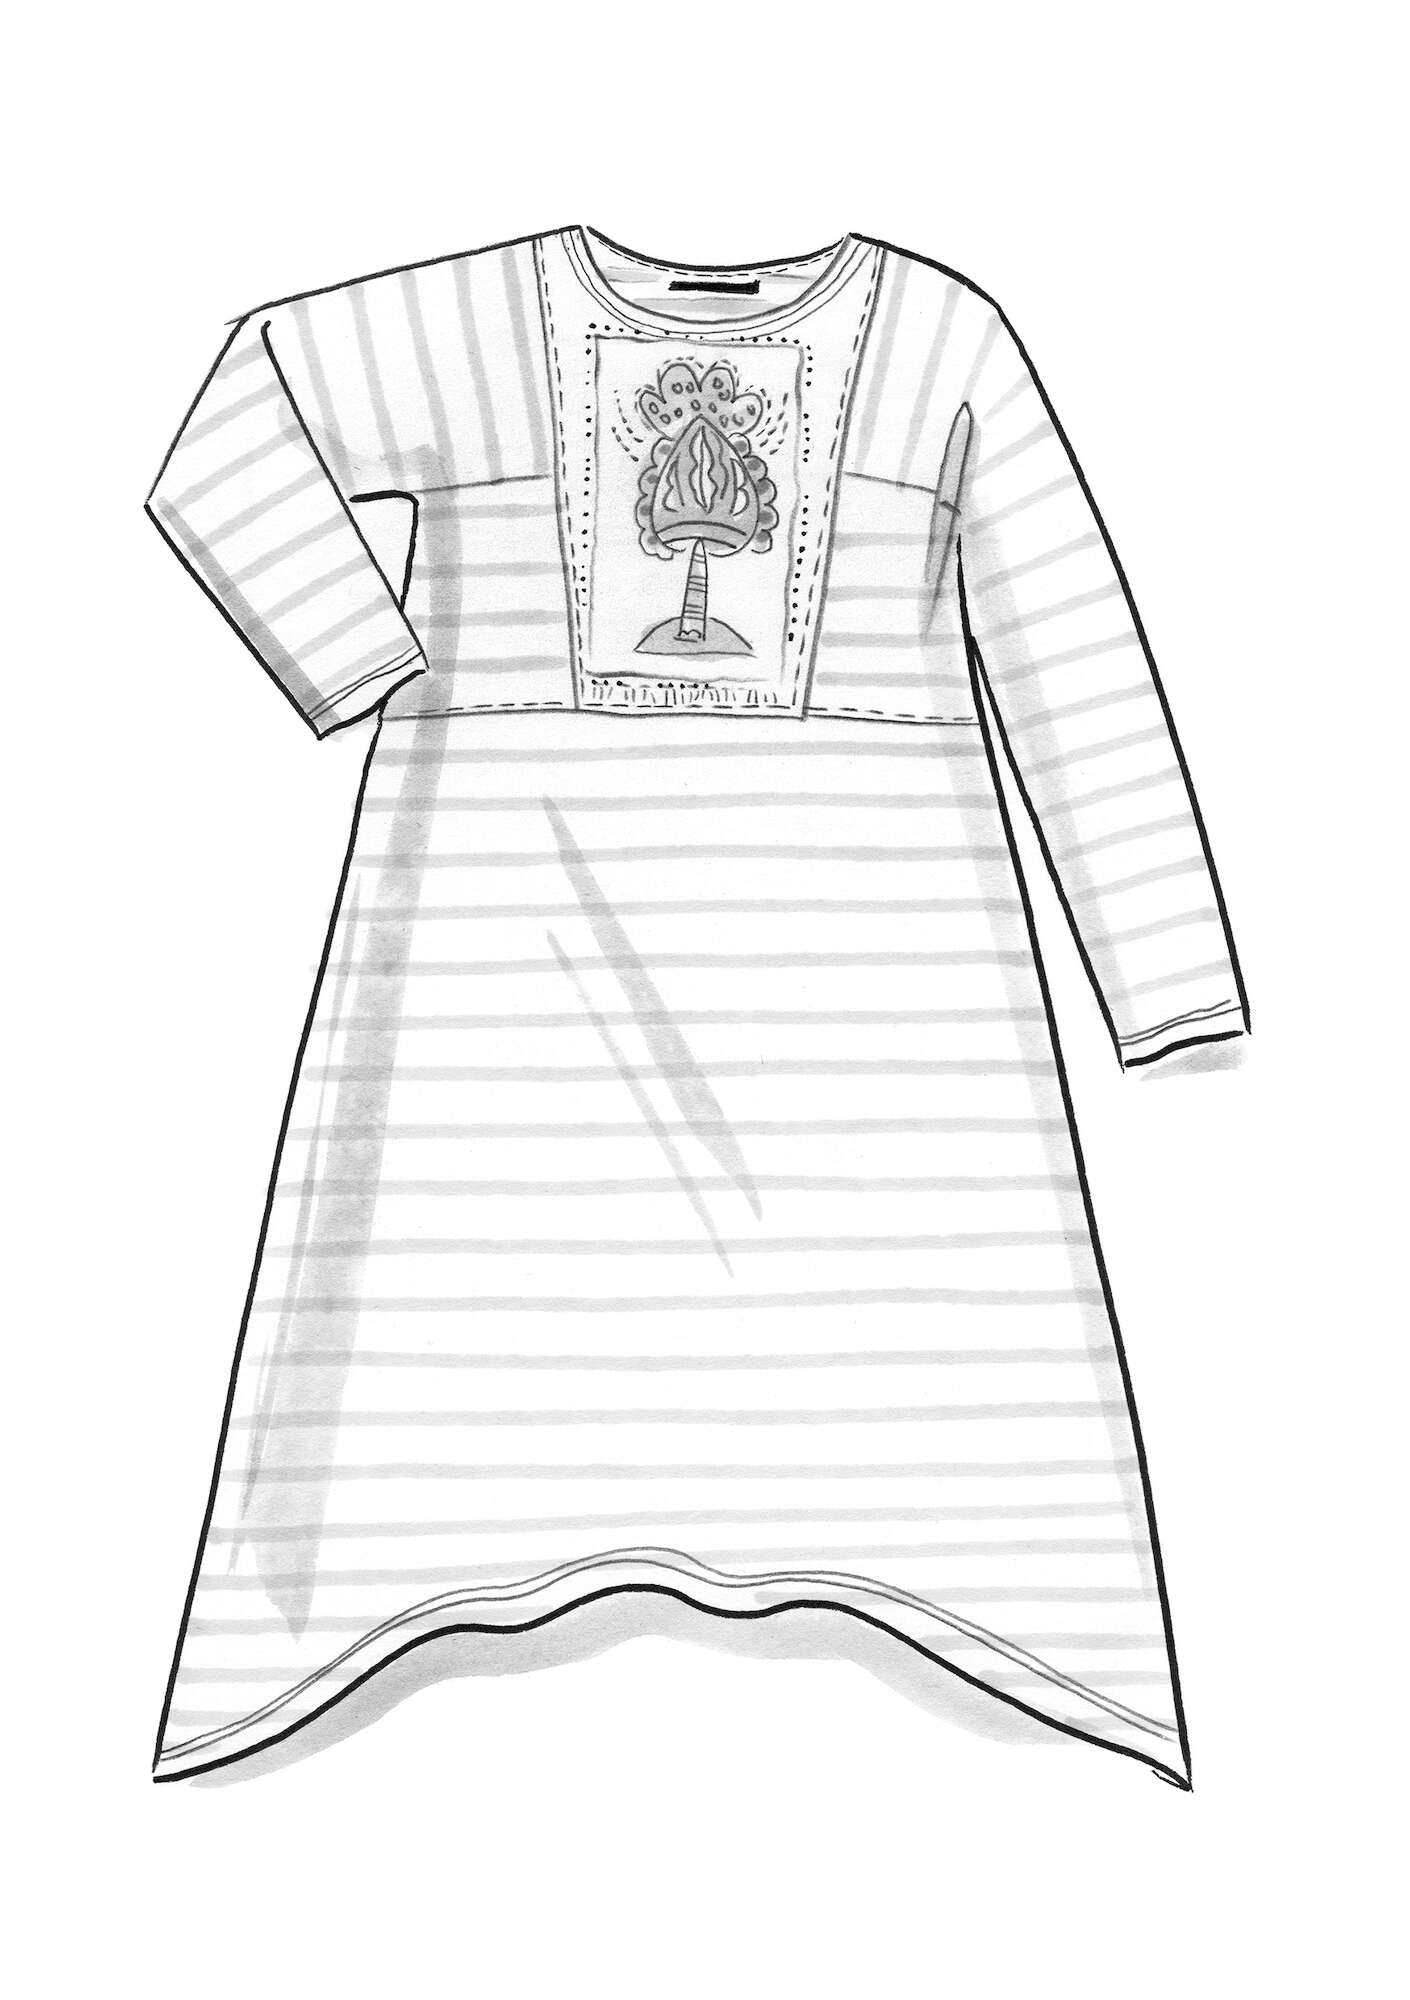  Artemis -trikoomekko ekopuuvillaa ja modaalia mantelimaito